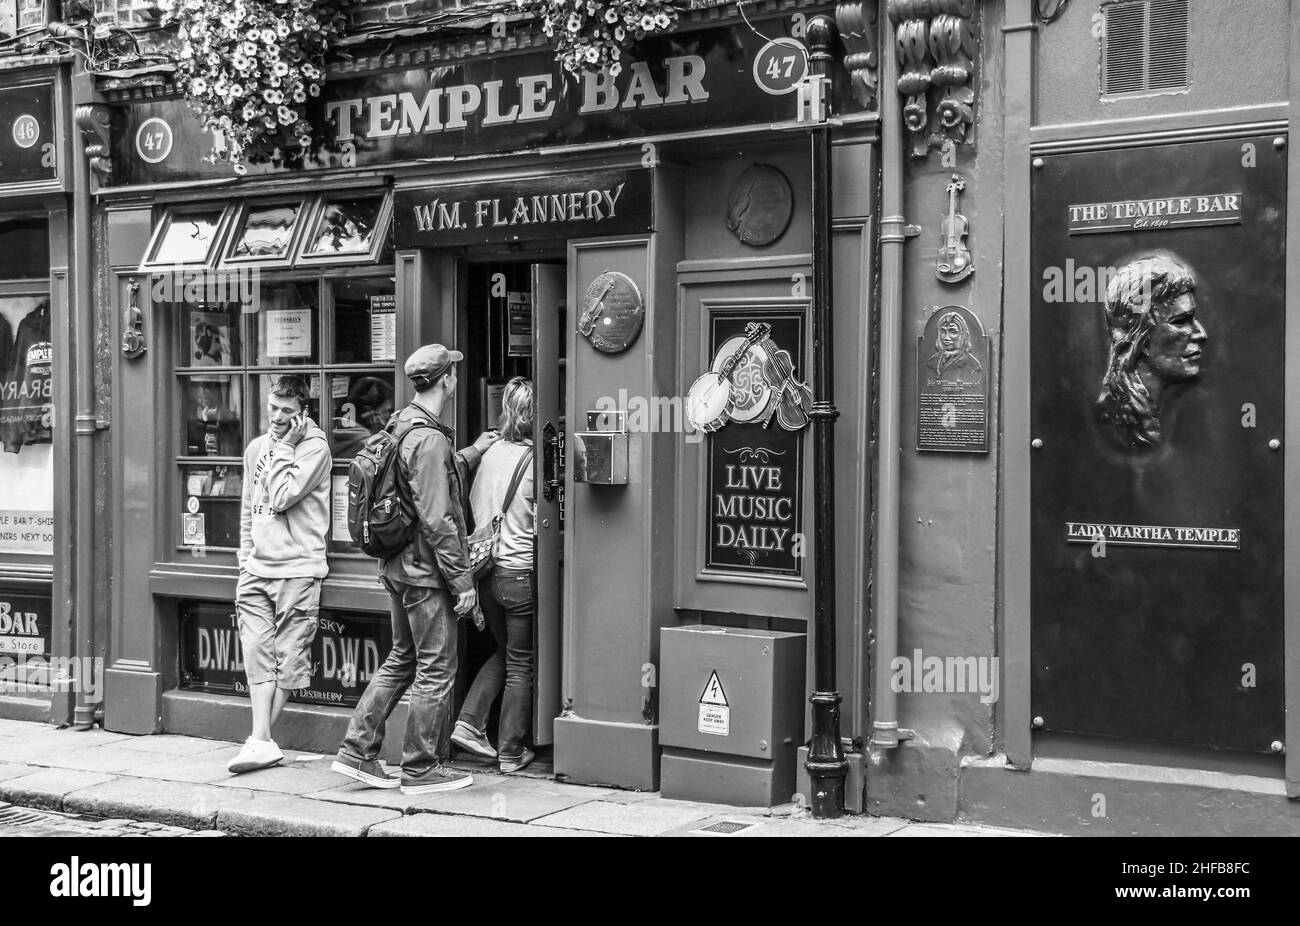 Zwei Jugendliche betreten die Temple Bar in Dublin, ein weiterer männlicher Jugendlicher telefoniert in lässiger Haltung mit seinem Smartphone Stock Photo